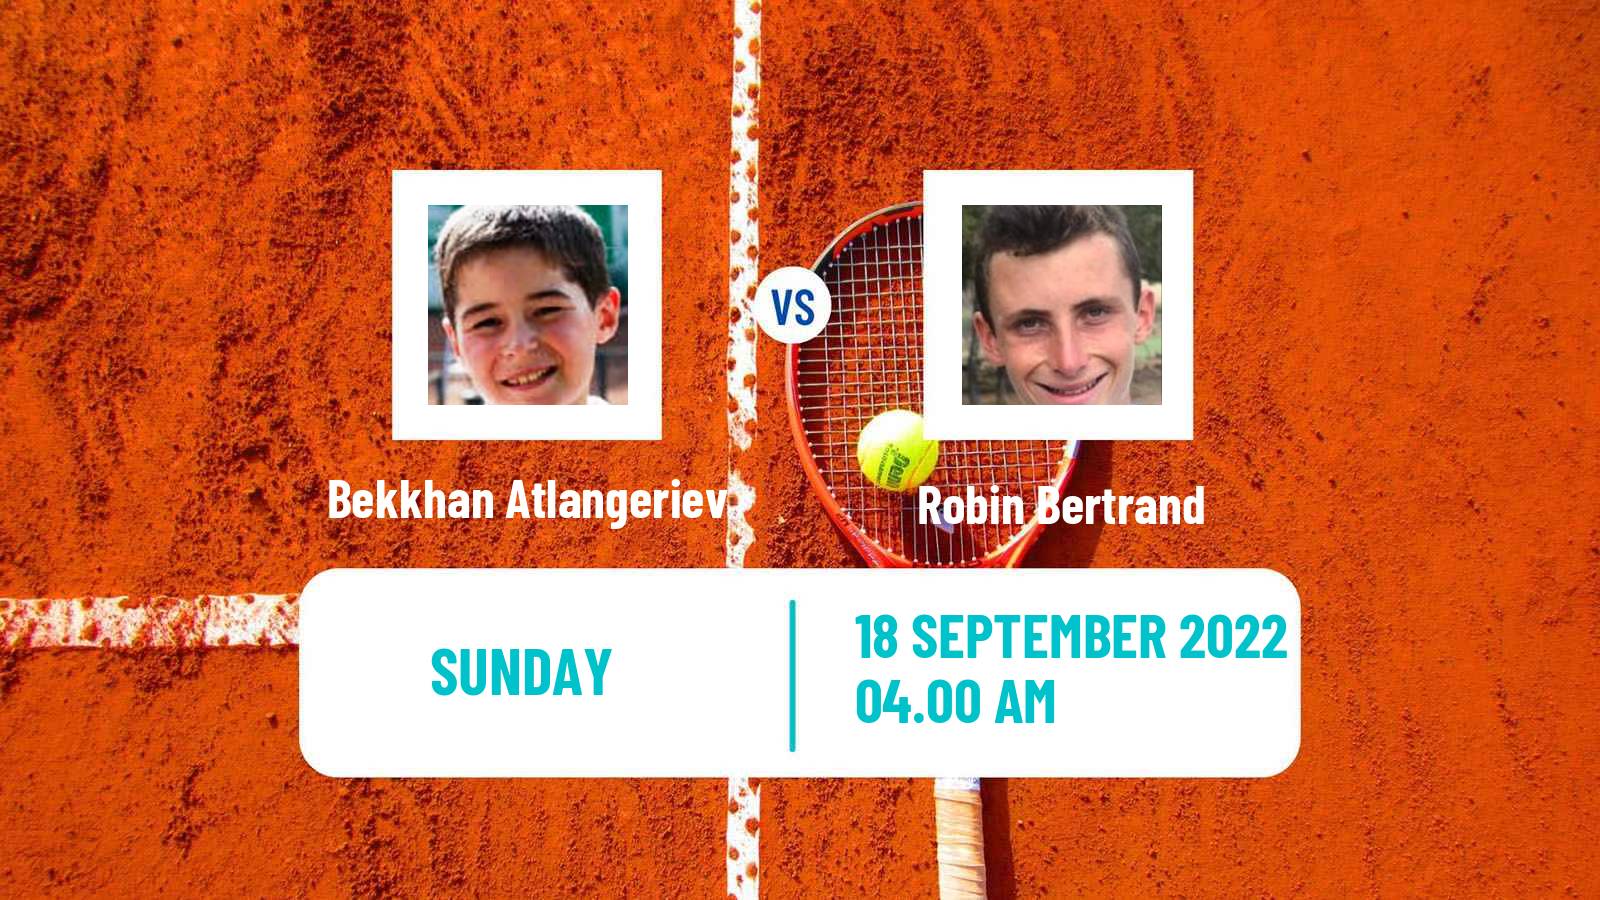 Tennis ITF Tournaments Bekkhan Atlangeriev - Robin Bertrand